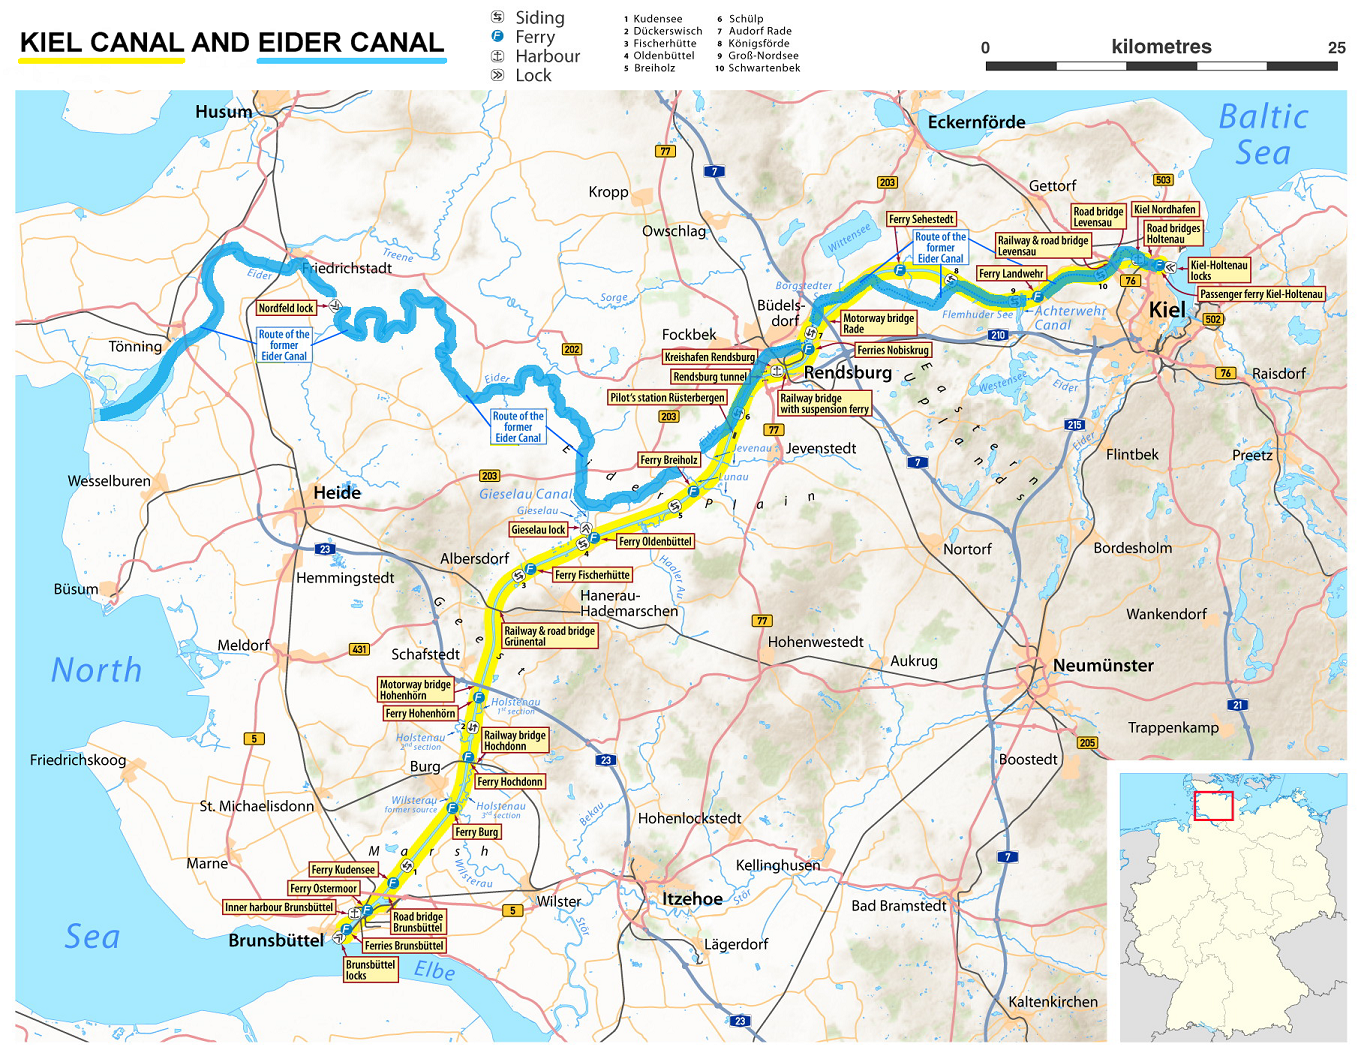 基尔运河的示意图,图中黄色的路线为基尔运河,蓝线为丹麦修建的爱德